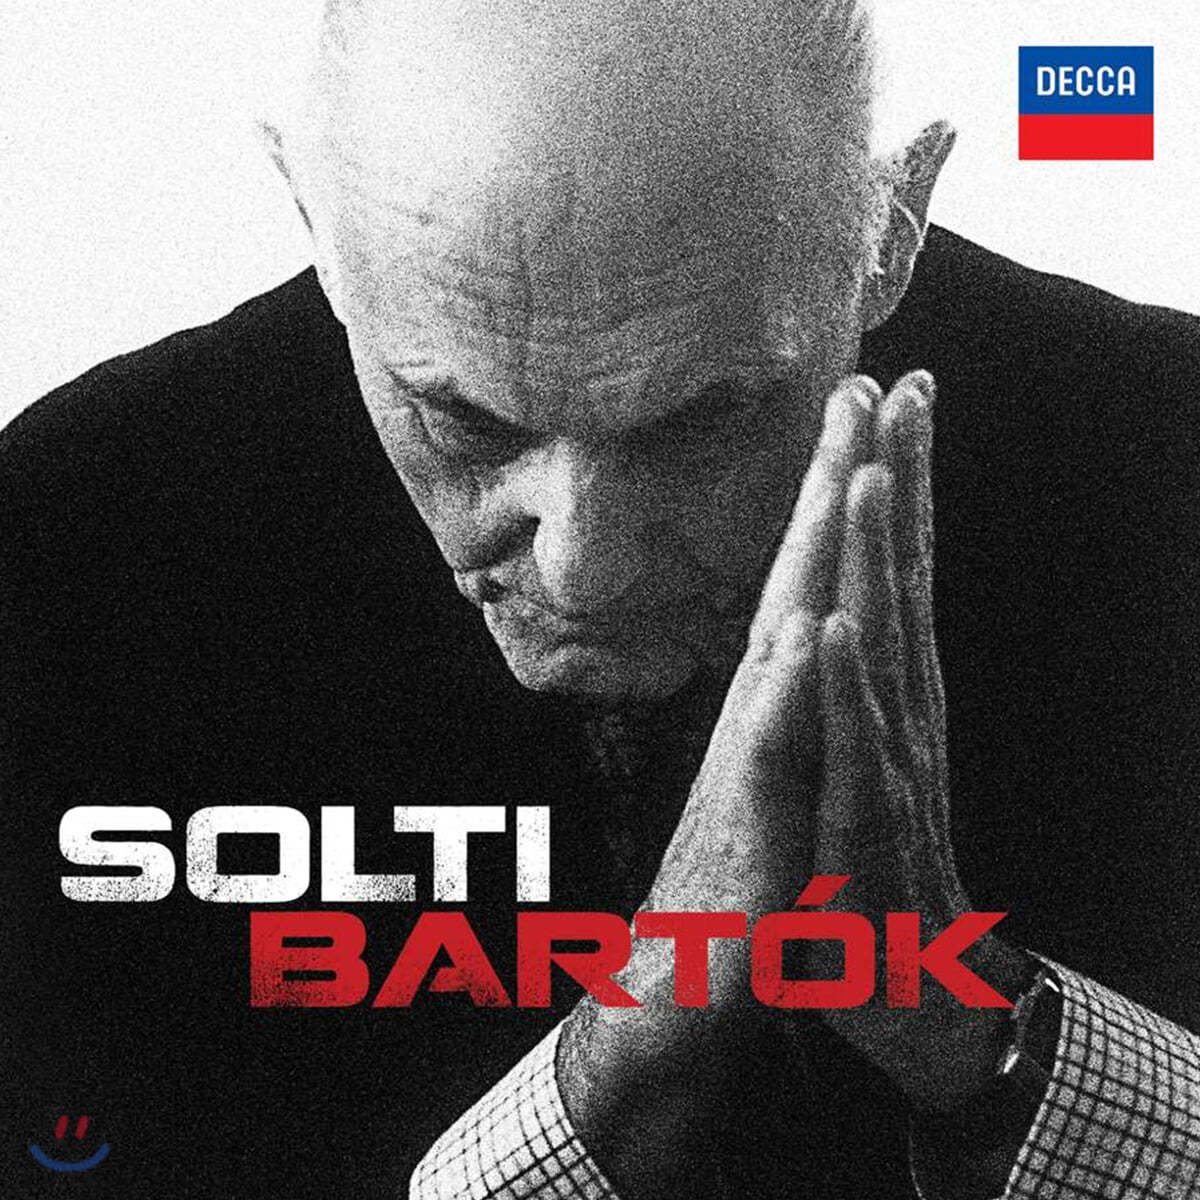 게으르그 솔티가 지휘하는 바르톡 (Solti Bartok)